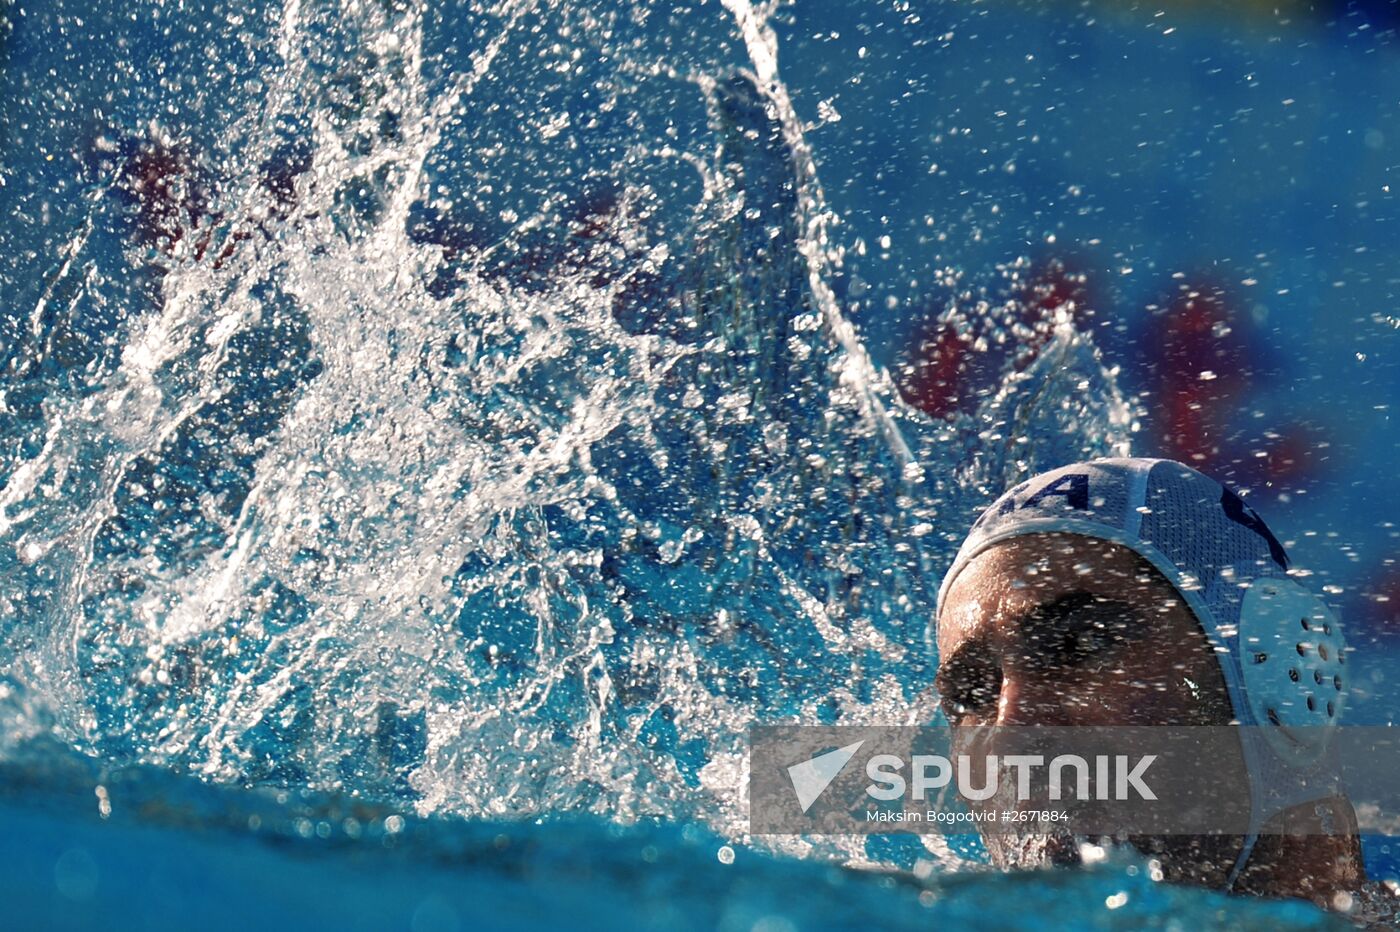 2015 World Aquatics Championships. Men's water polo. Brazil vs. United States